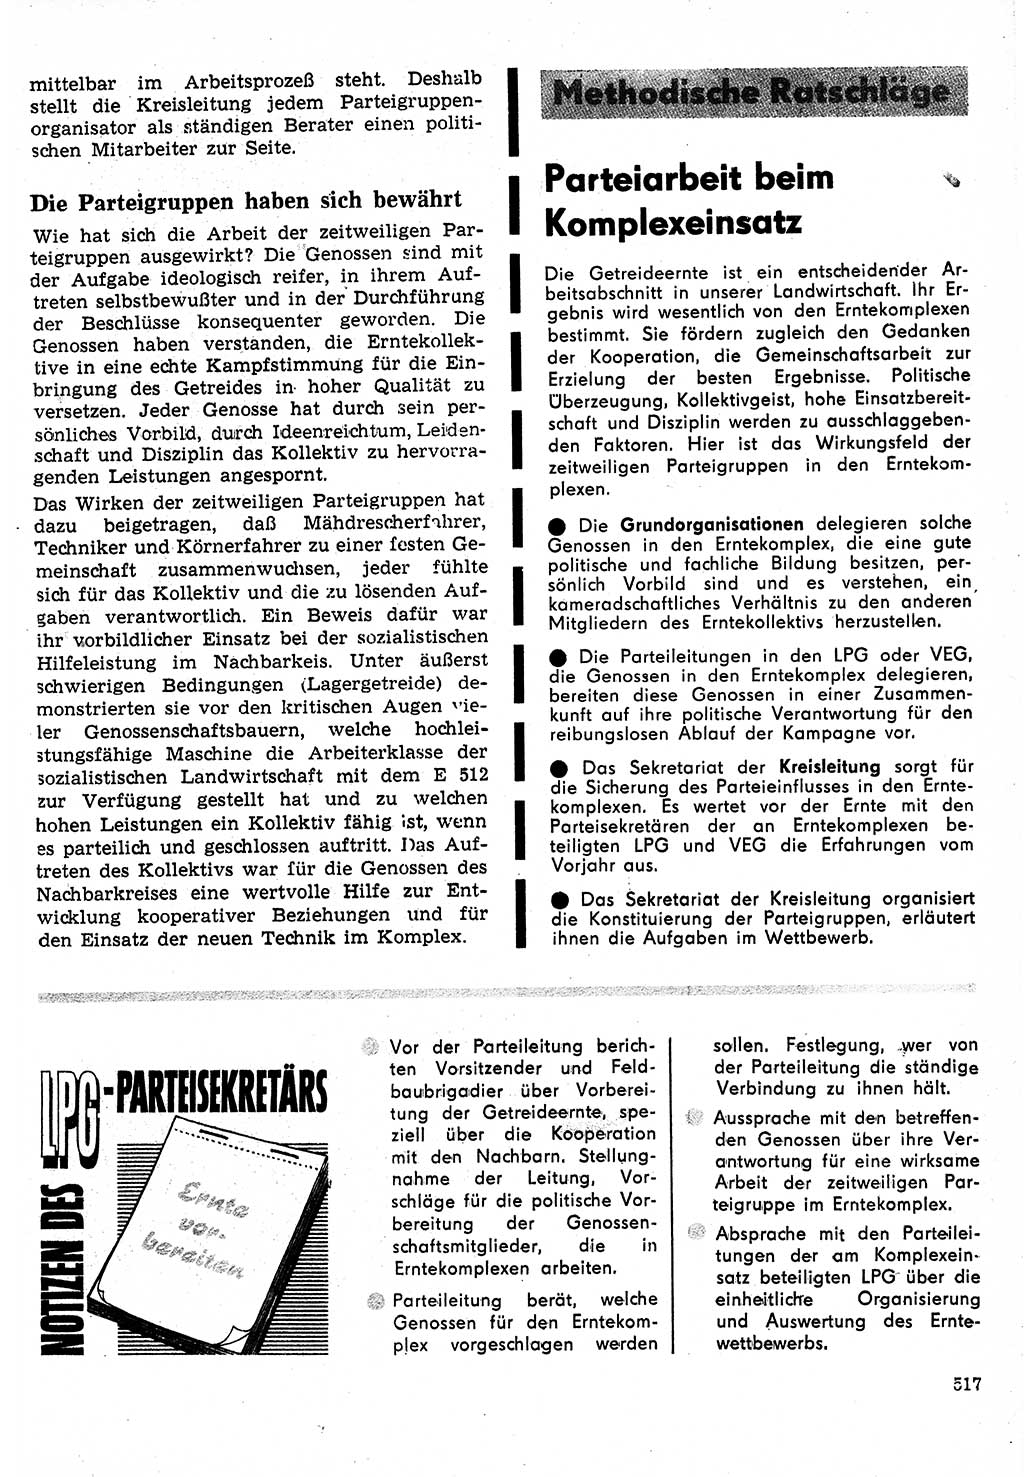 Neuer Weg (NW), Organ des Zentralkomitees (ZK) der SED (Sozialistische Einheitspartei Deutschlands) für Fragen des Parteilebens, 24. Jahrgang [Deutsche Demokratische Republik (DDR)] 1969, Seite 517 (NW ZK SED DDR 1969, S. 517)